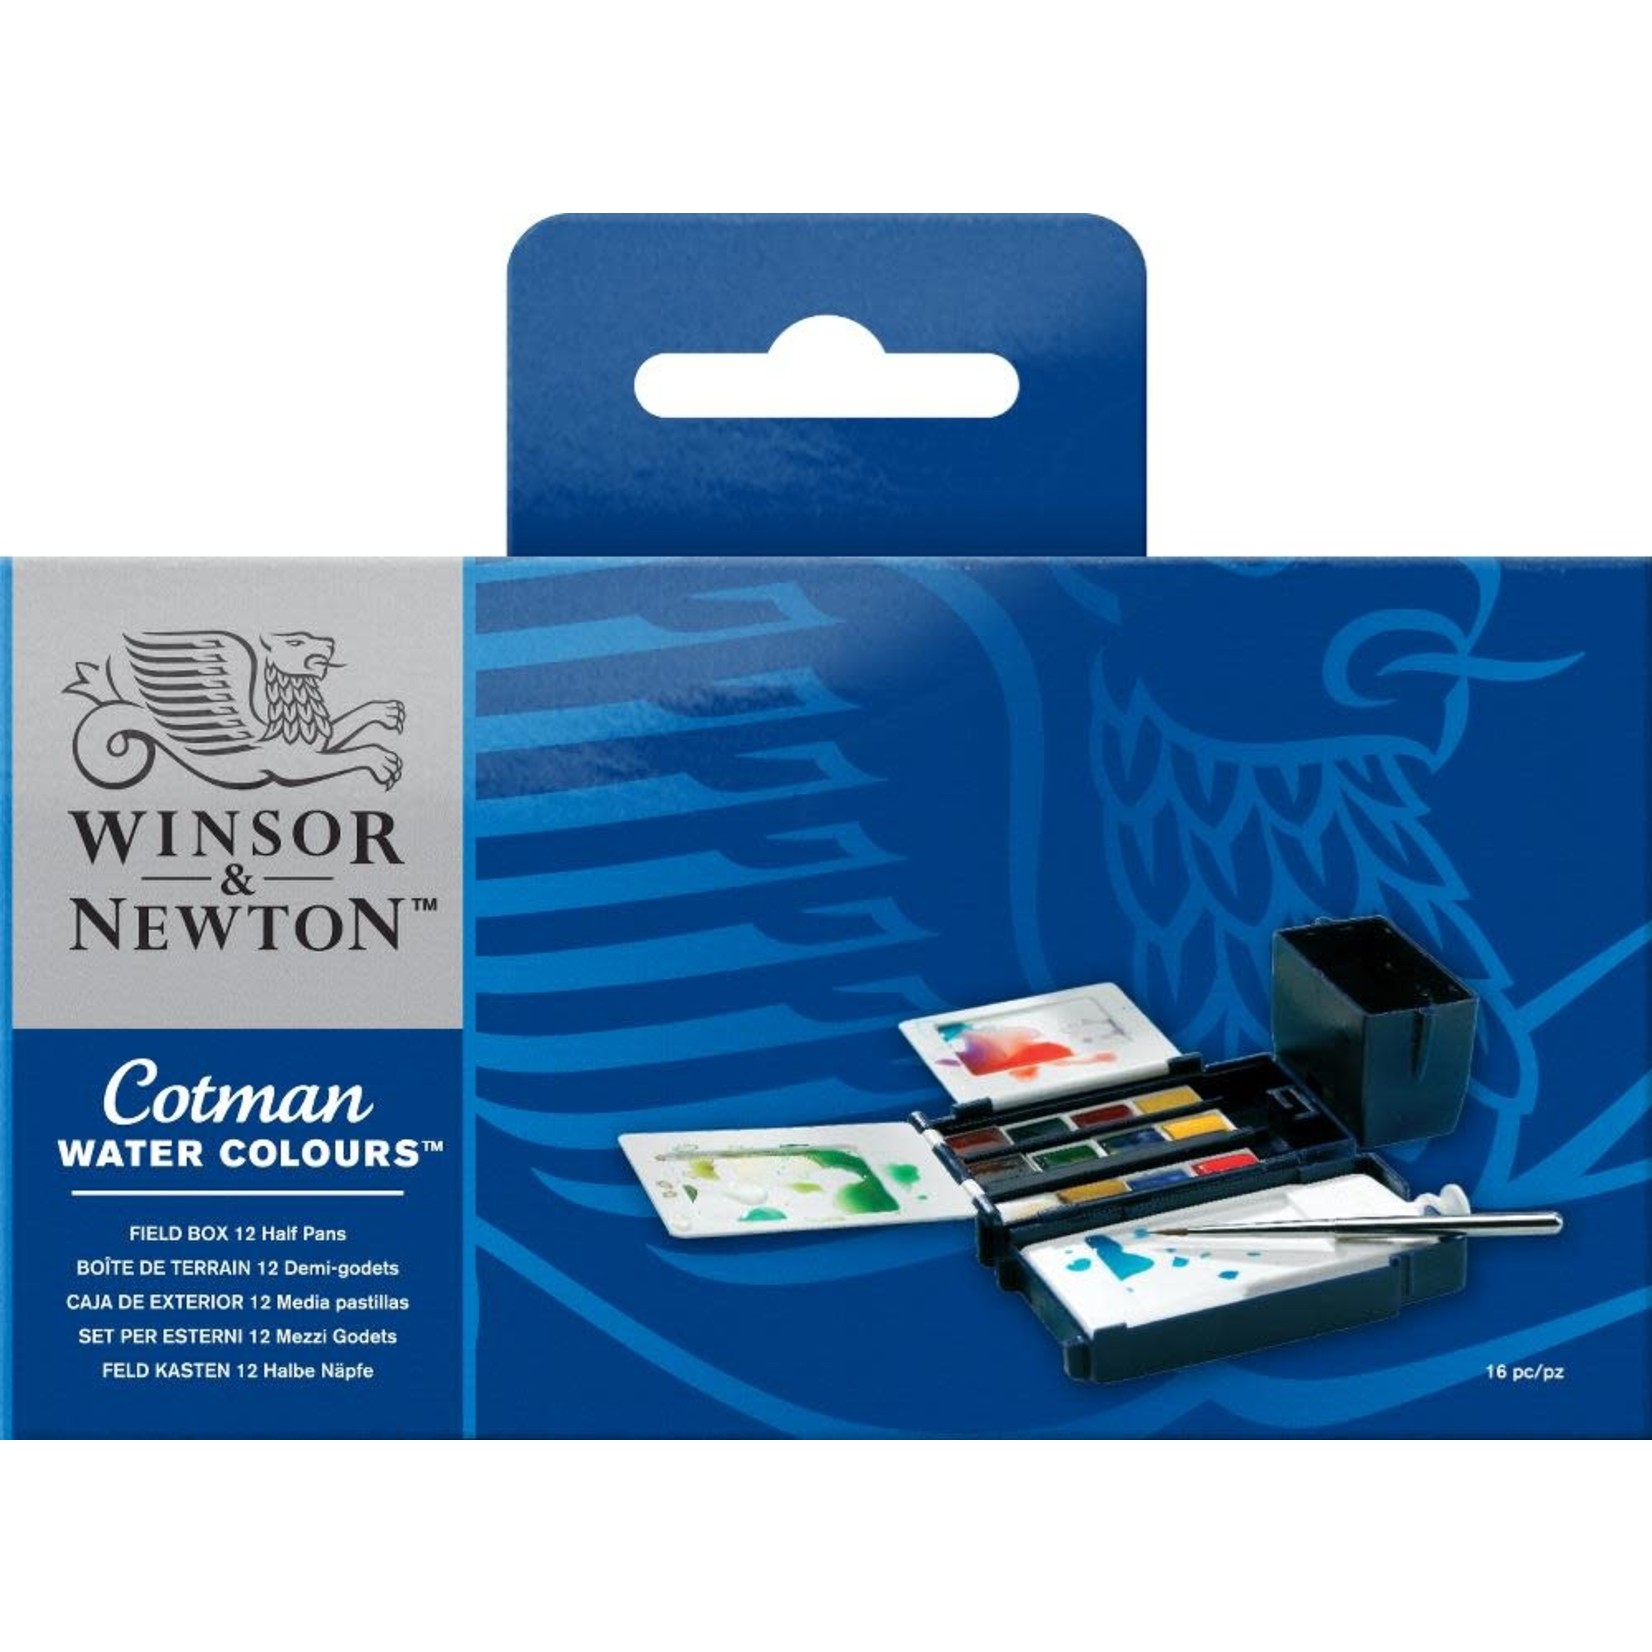 WINSOR NEWTON COTMAN FIELD BOX